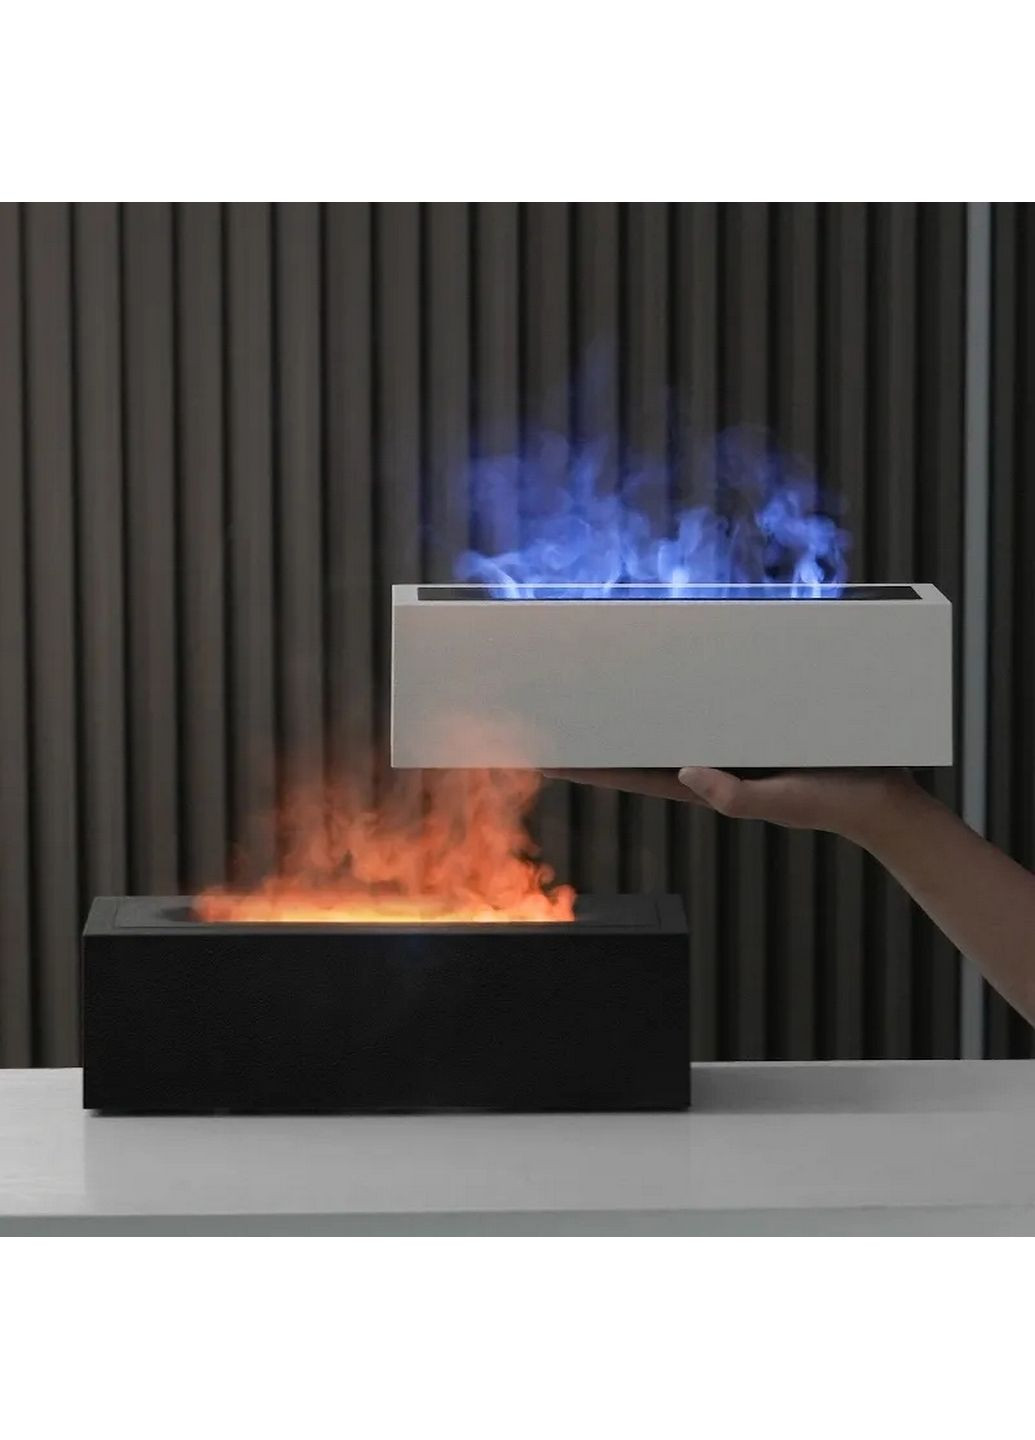 Увлажнитель воздуха портативный H3 Nordic Style Flame аромадифузор электрический, эффект пламени, ПОДАРОК + 2 Арома масла Kinscoter (293480831)